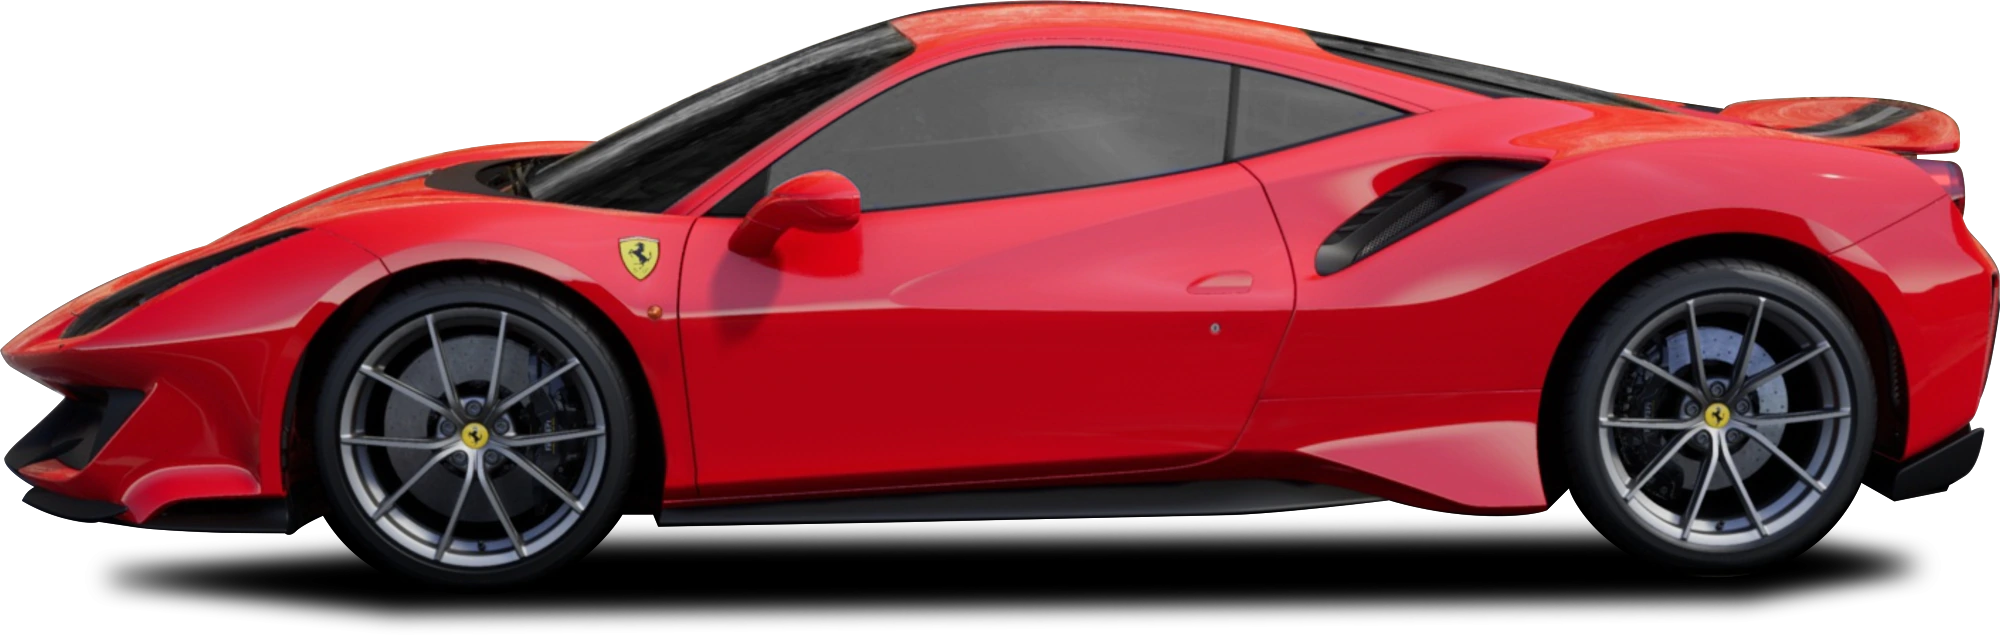 Red Ferrari GTC4Lusso Transparent Image